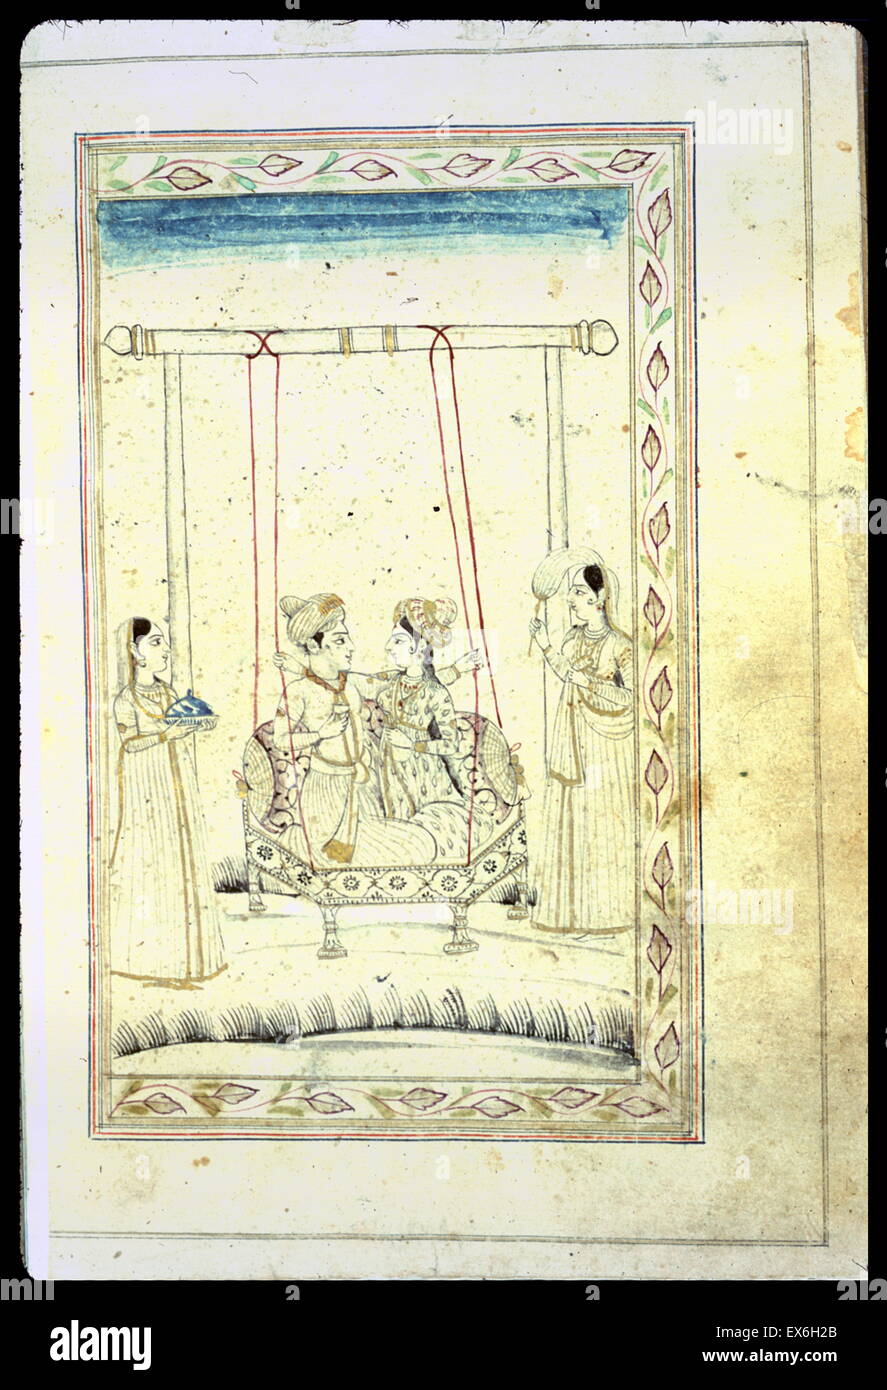 Tard style Mughal dessin miniature en noir et doré avec des accents de rouge et bleu. Un homme et une femme assis sur une balançoire, deux femmes libres de partiellement les accompagnateurs se tiennent de chaque côté Banque D'Images